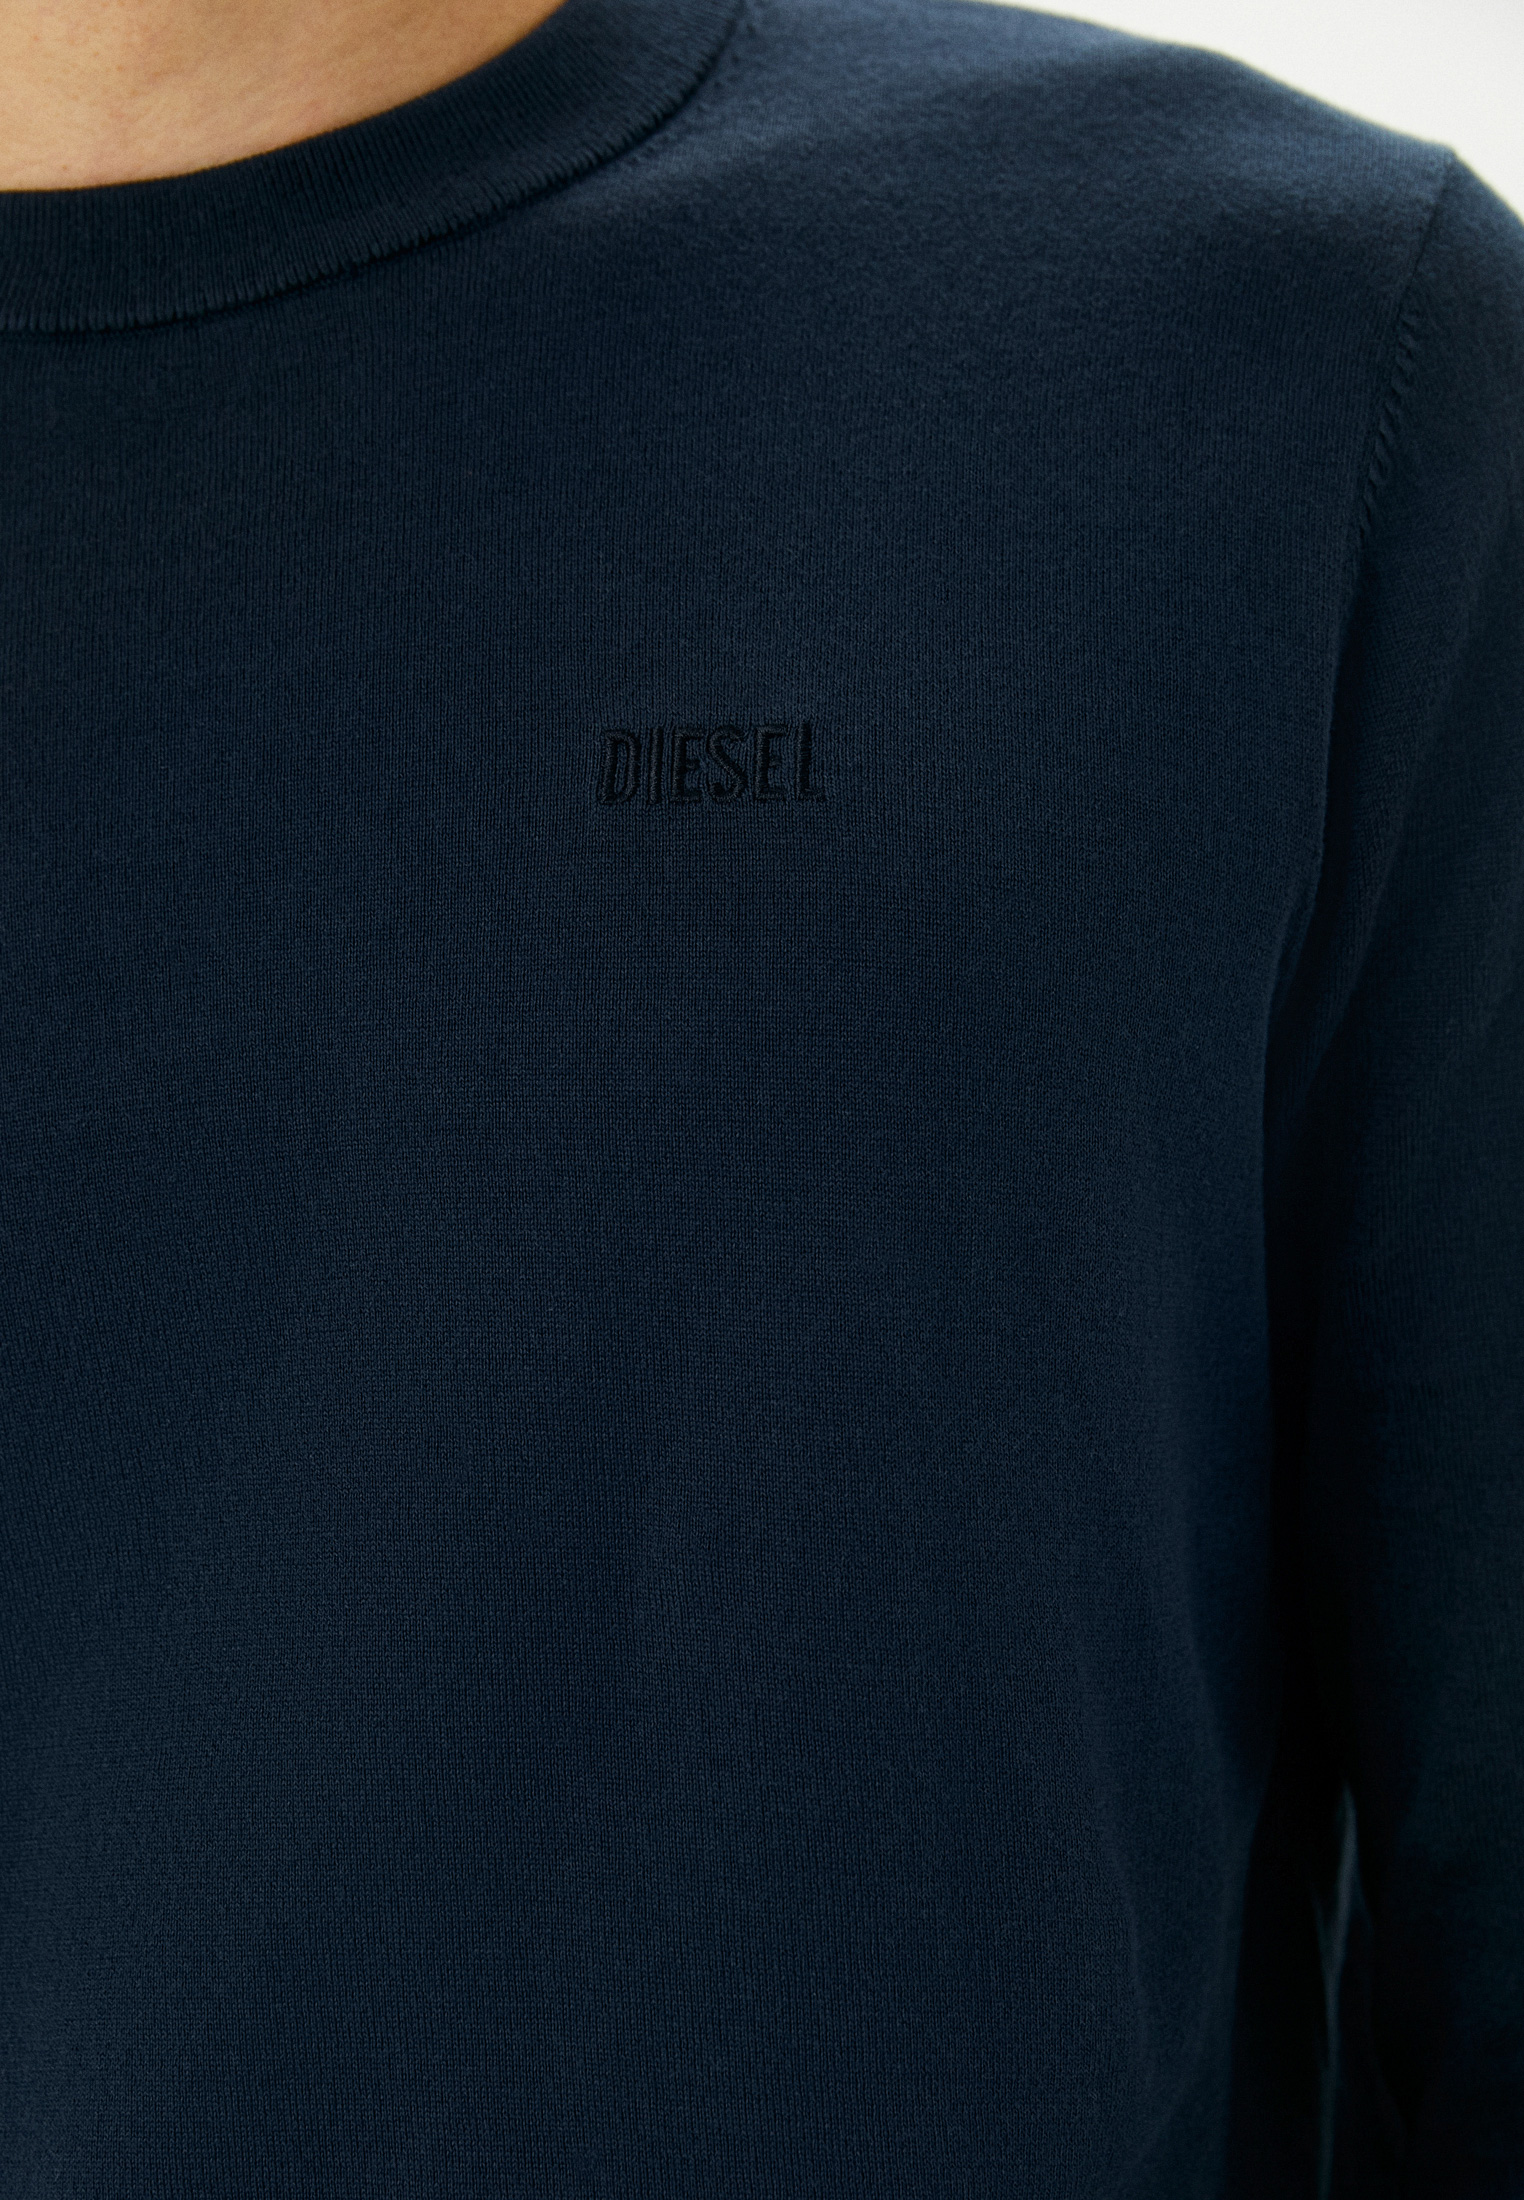 Джемпер Diesel (Дизель) 00SQFBRLAXU: изображение 4